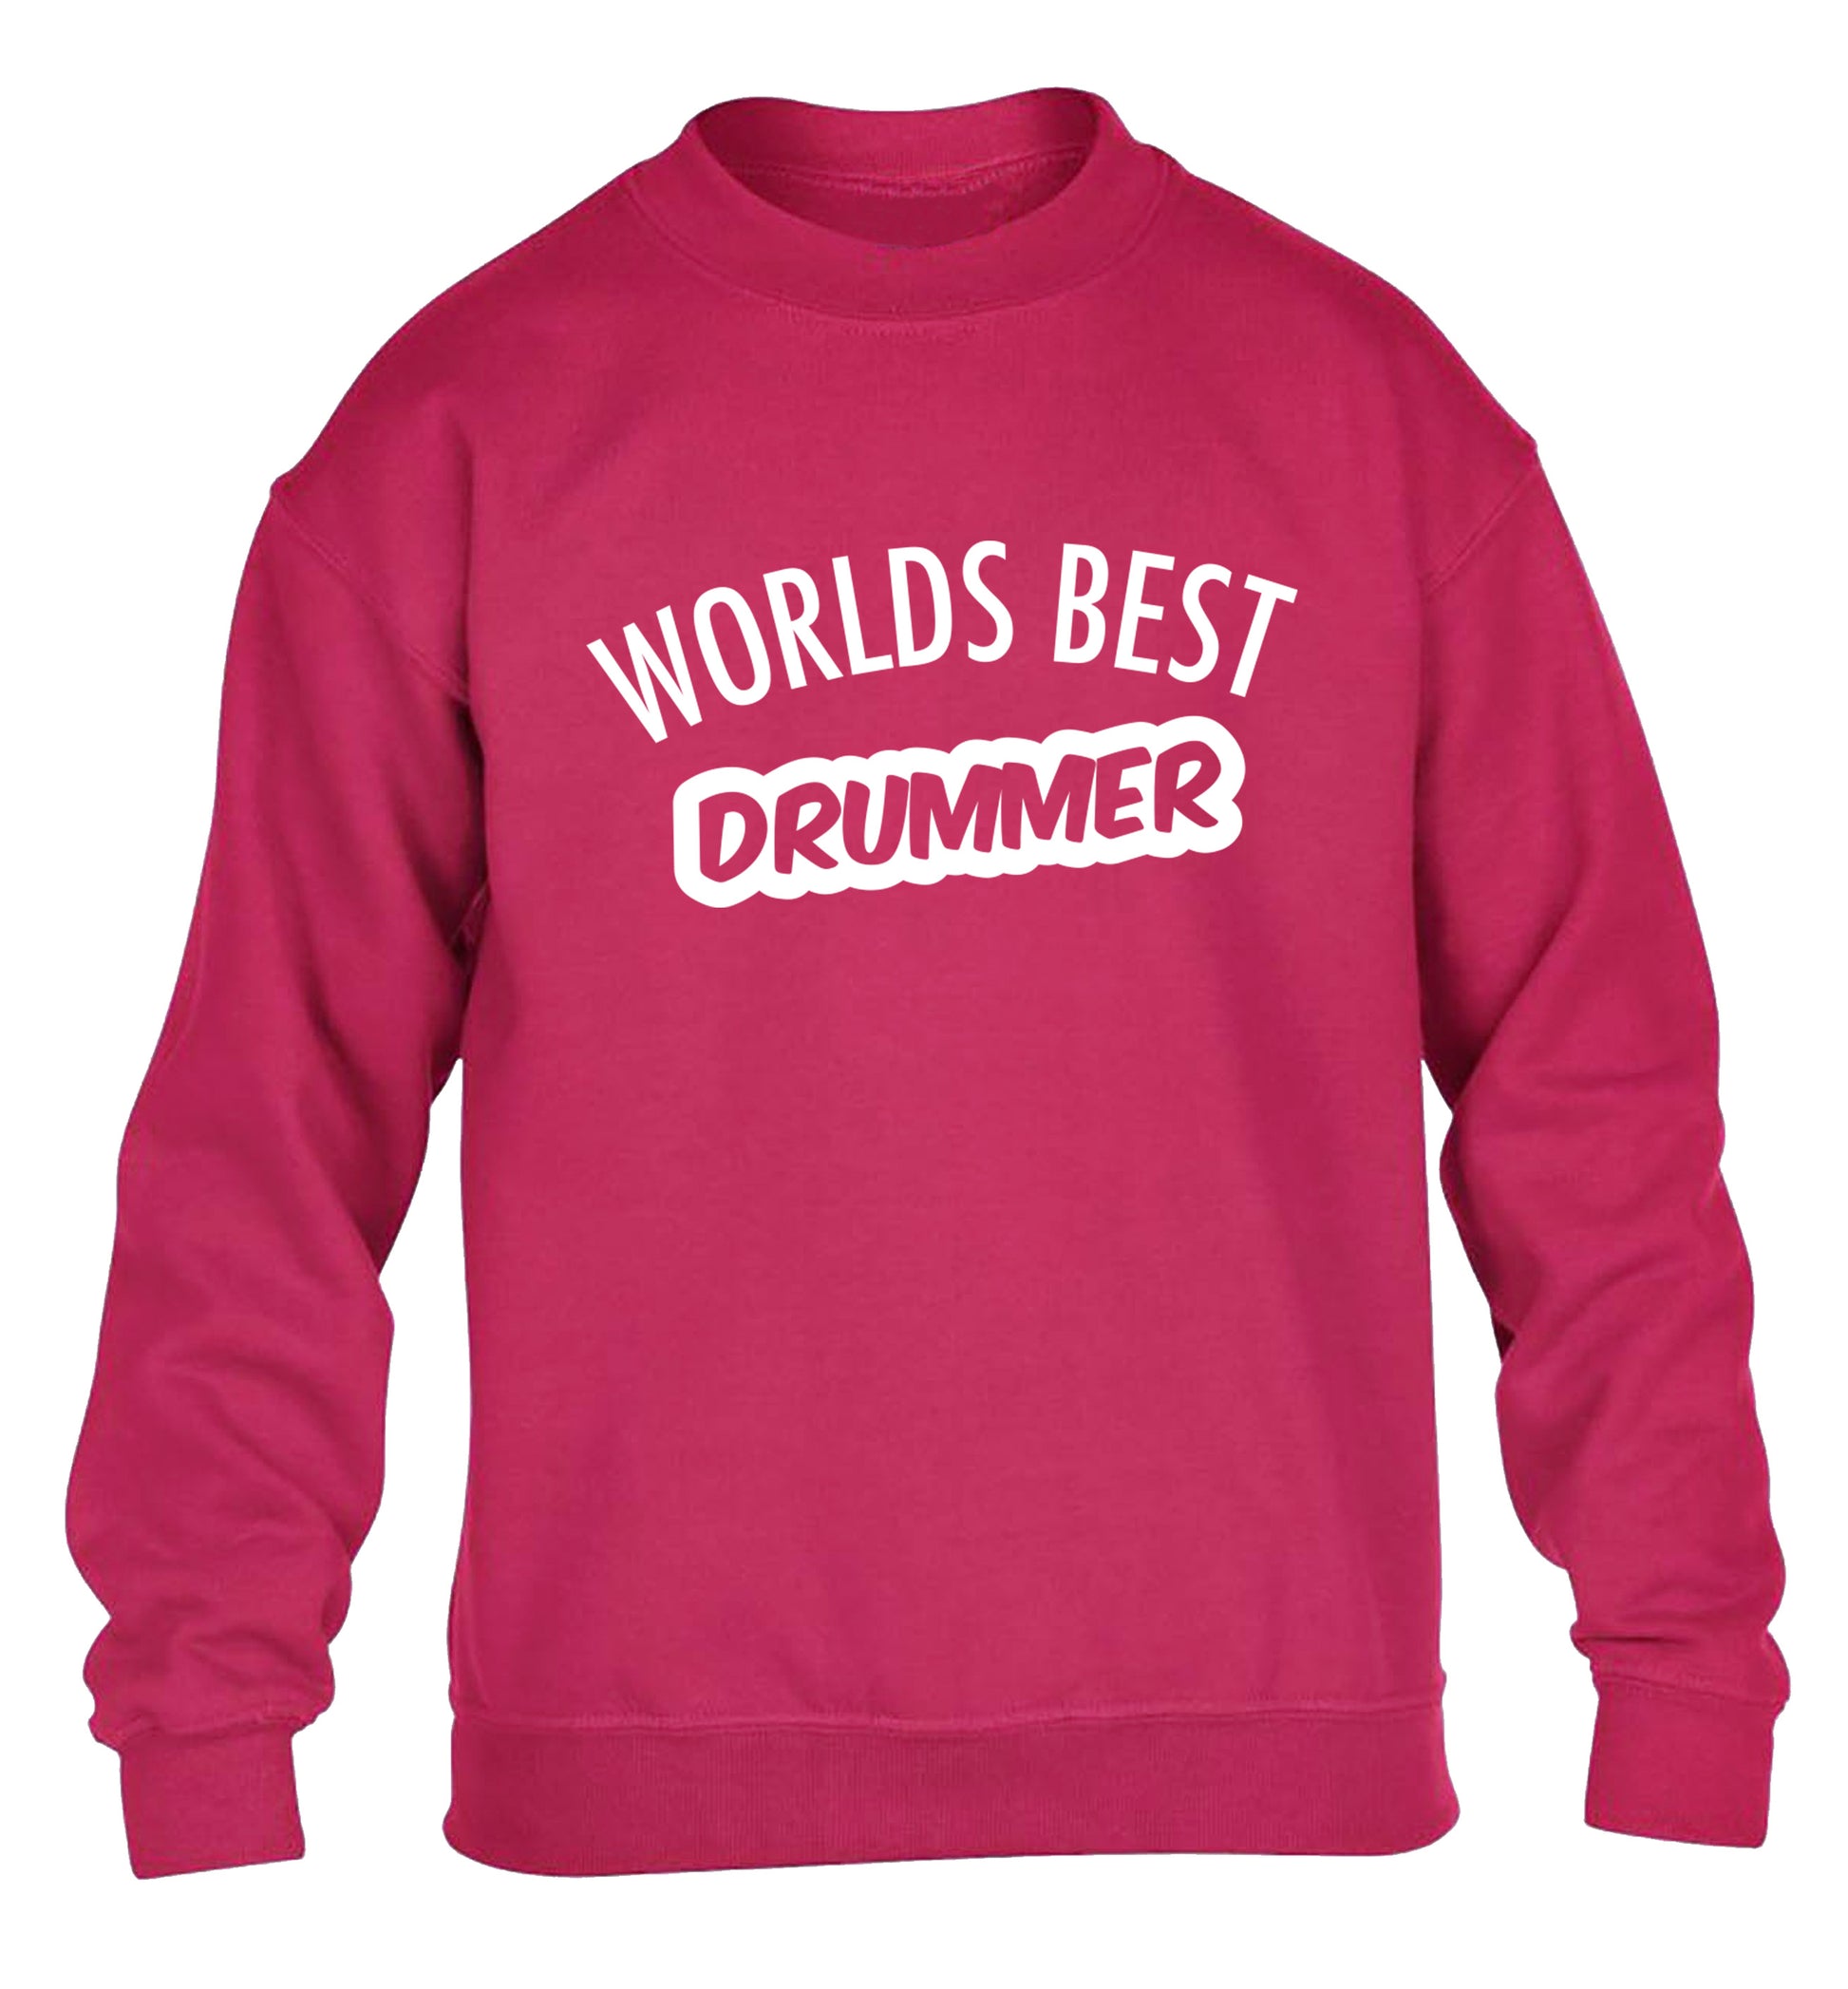 Worlds best drummer children's pink sweater 12-13 Years